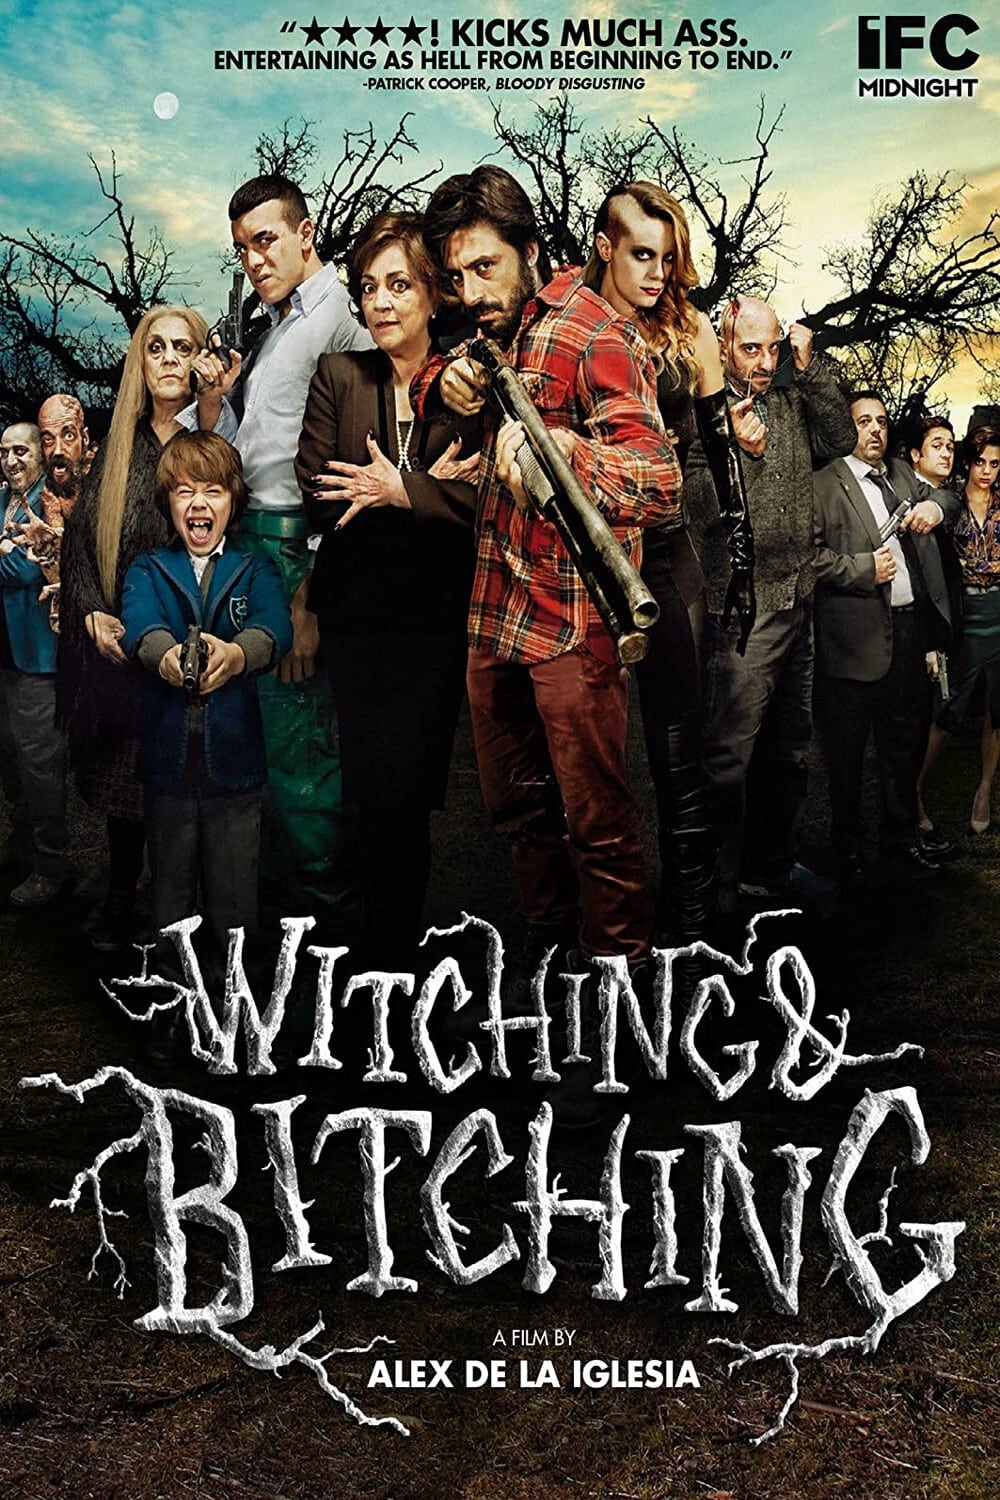 ดูหนังออนไลน์ฟรี Witching & Bitching พลังป่วง ก๊วนปาร์ตี้